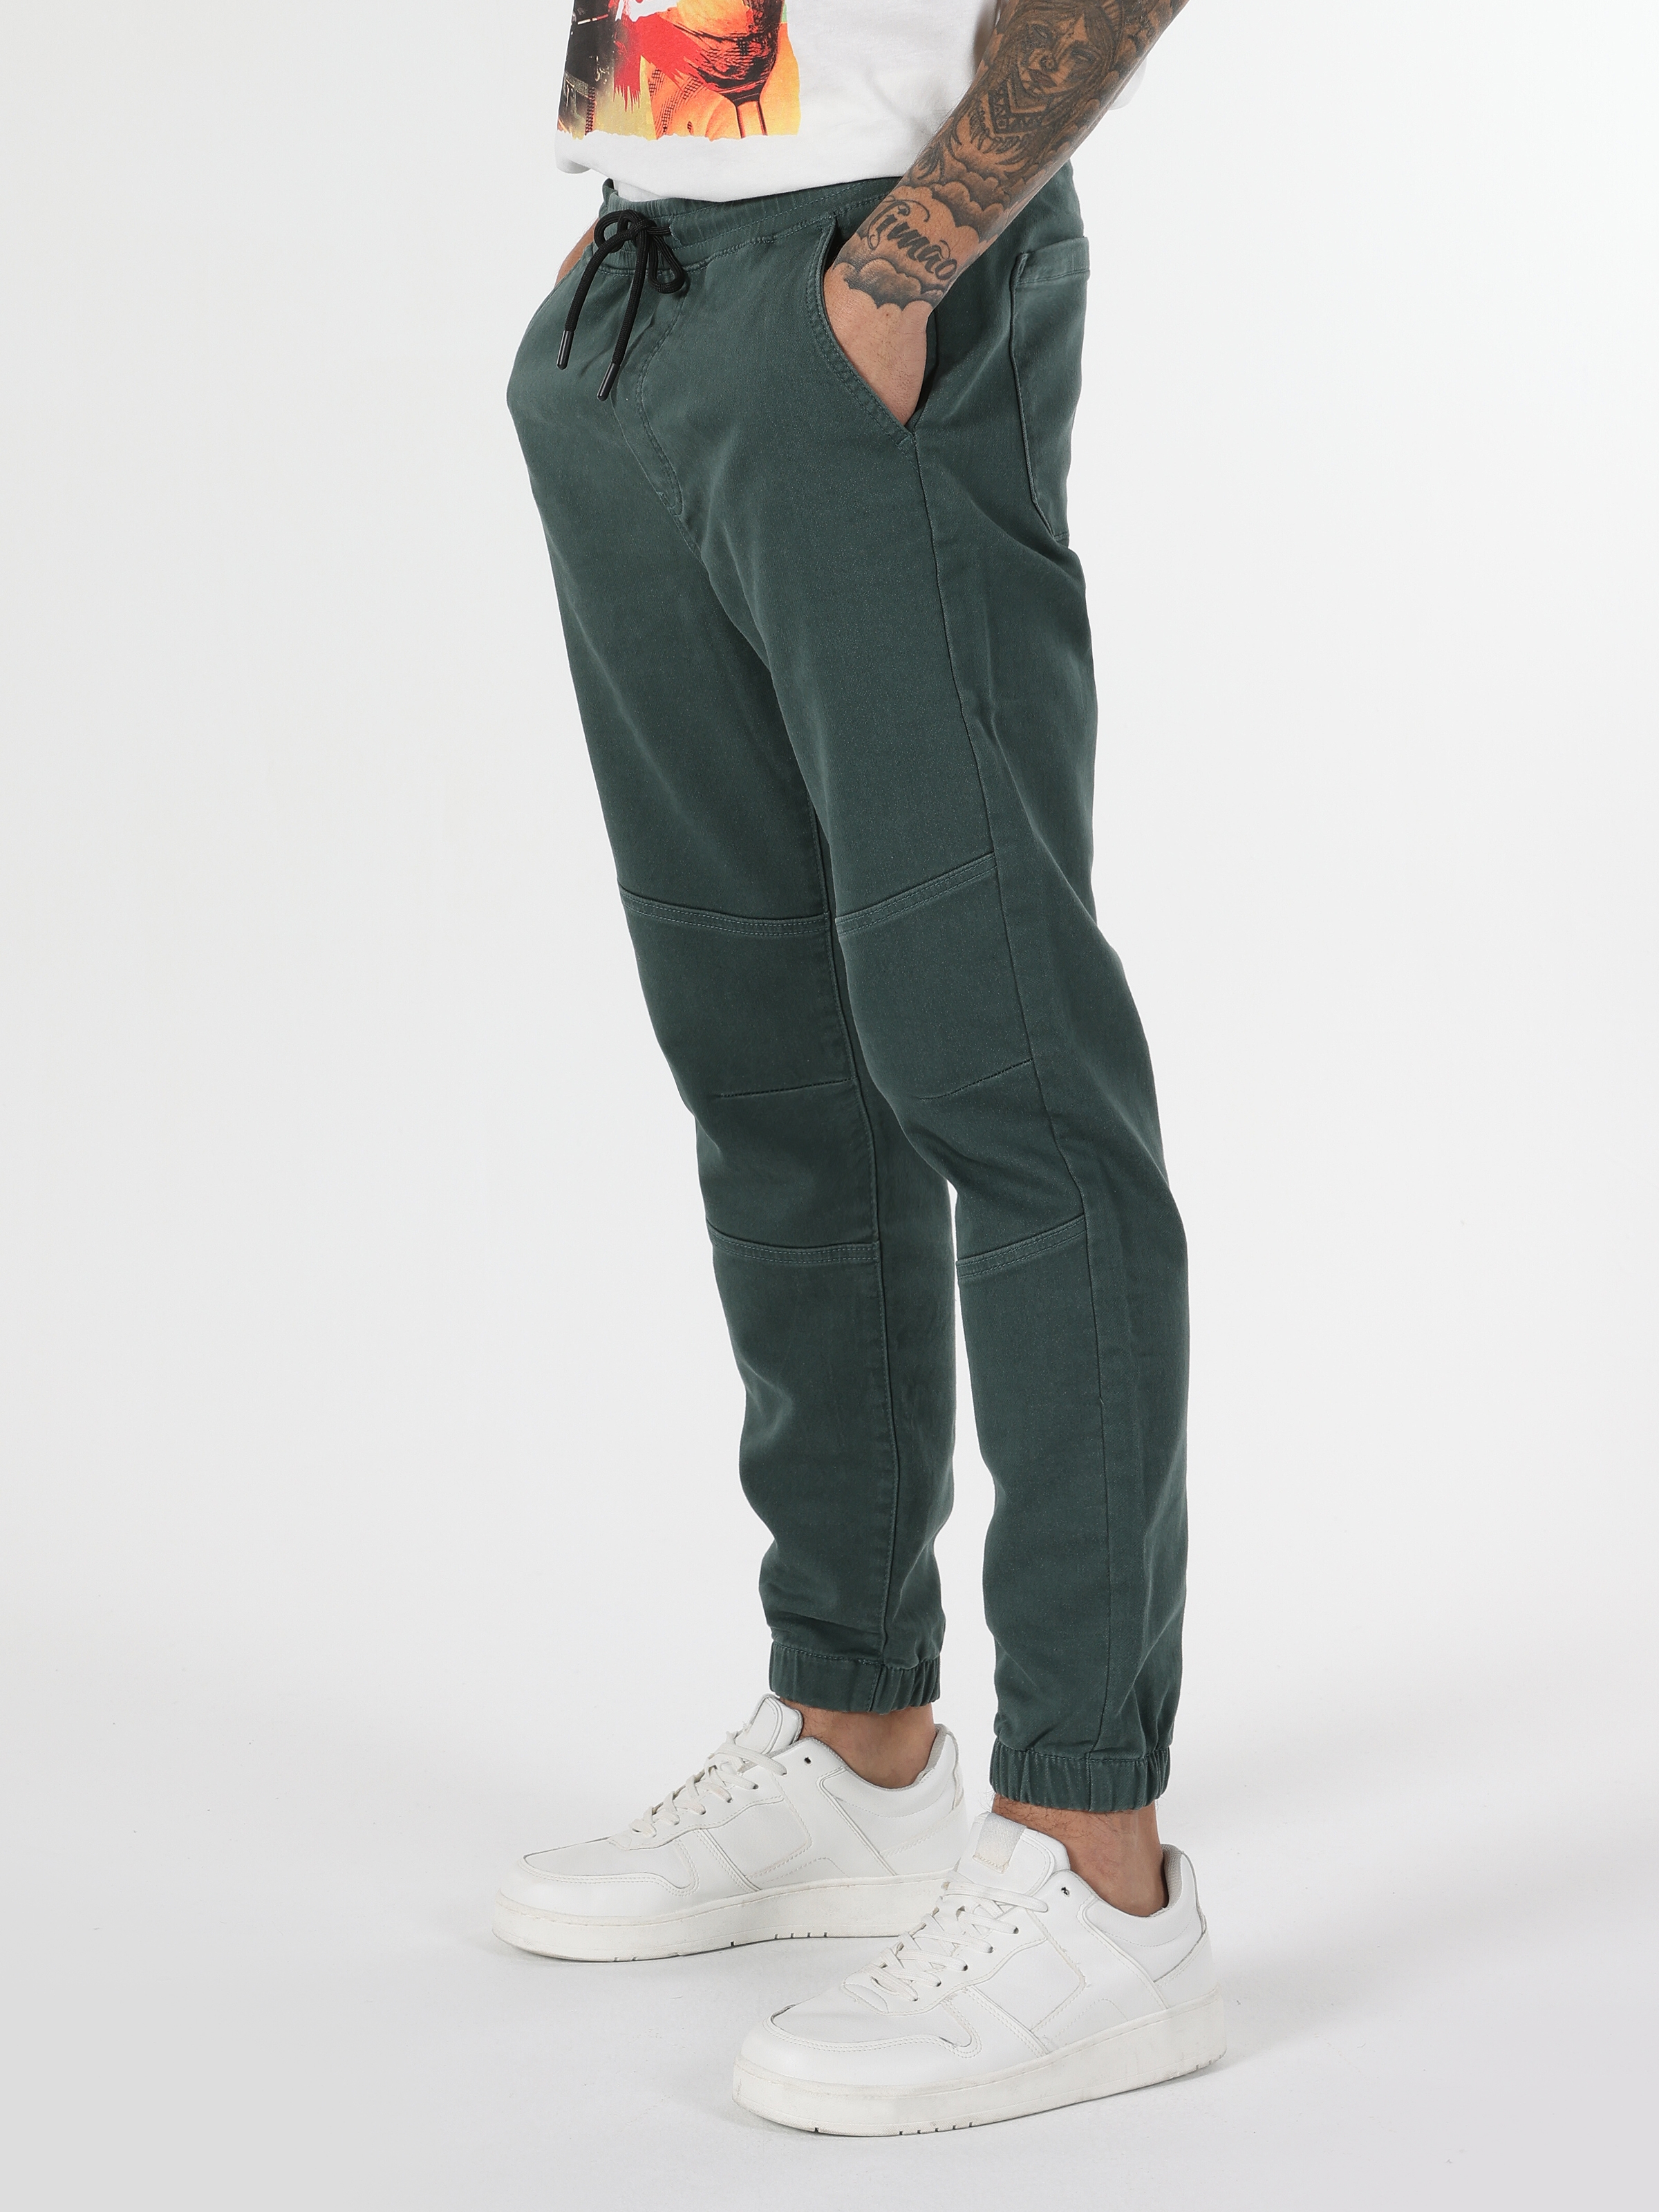 Afficher les détails de Pantalon Homme Vert Taille Moyenne, Coupe Slim, Jambe Droite